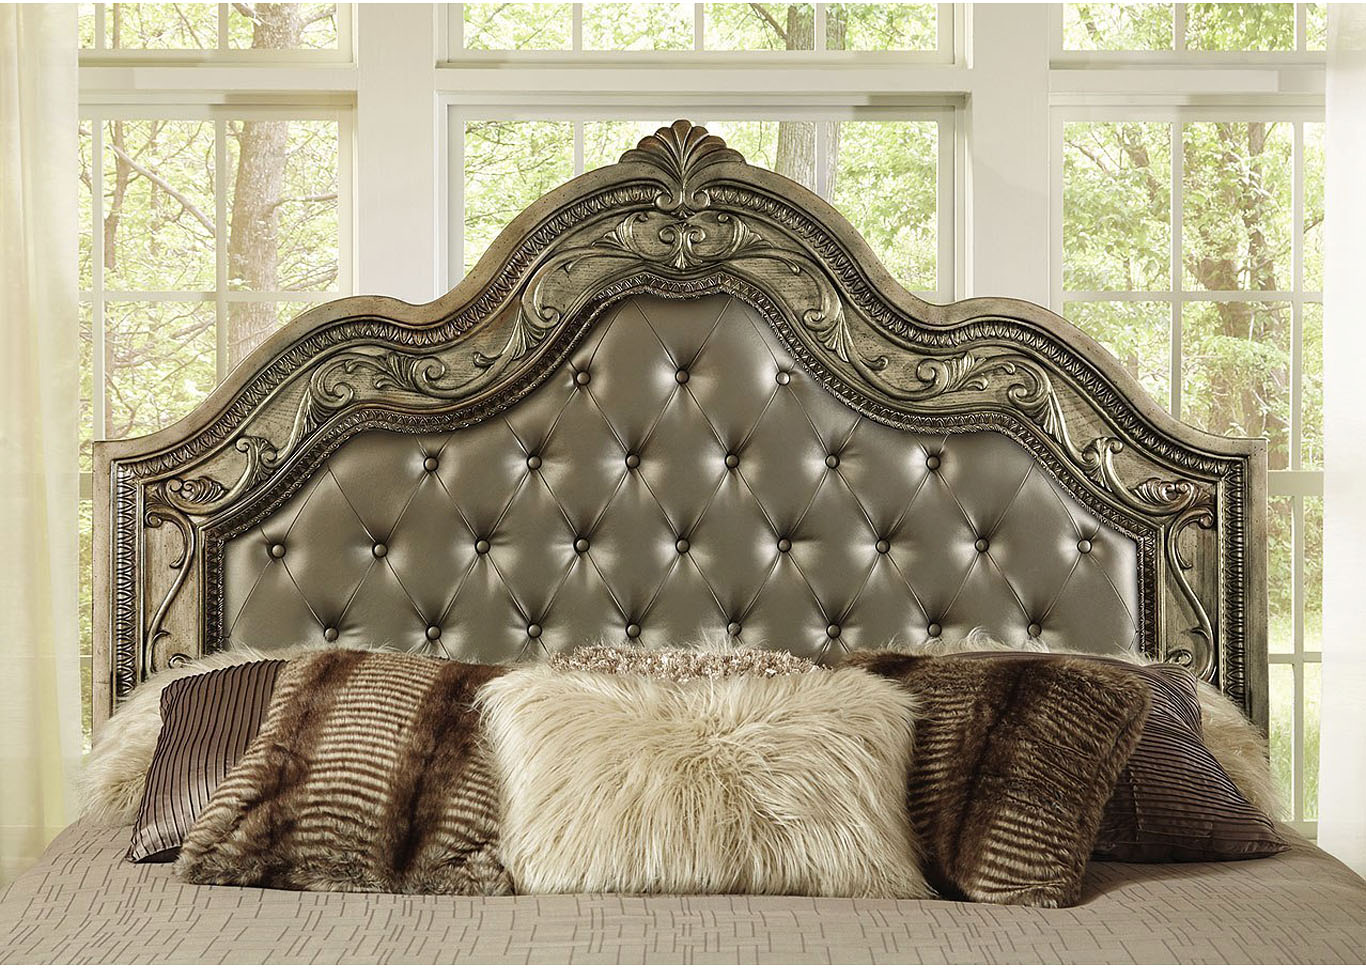 Dorado Padded Panel Bedroom Set - Queen,Instore